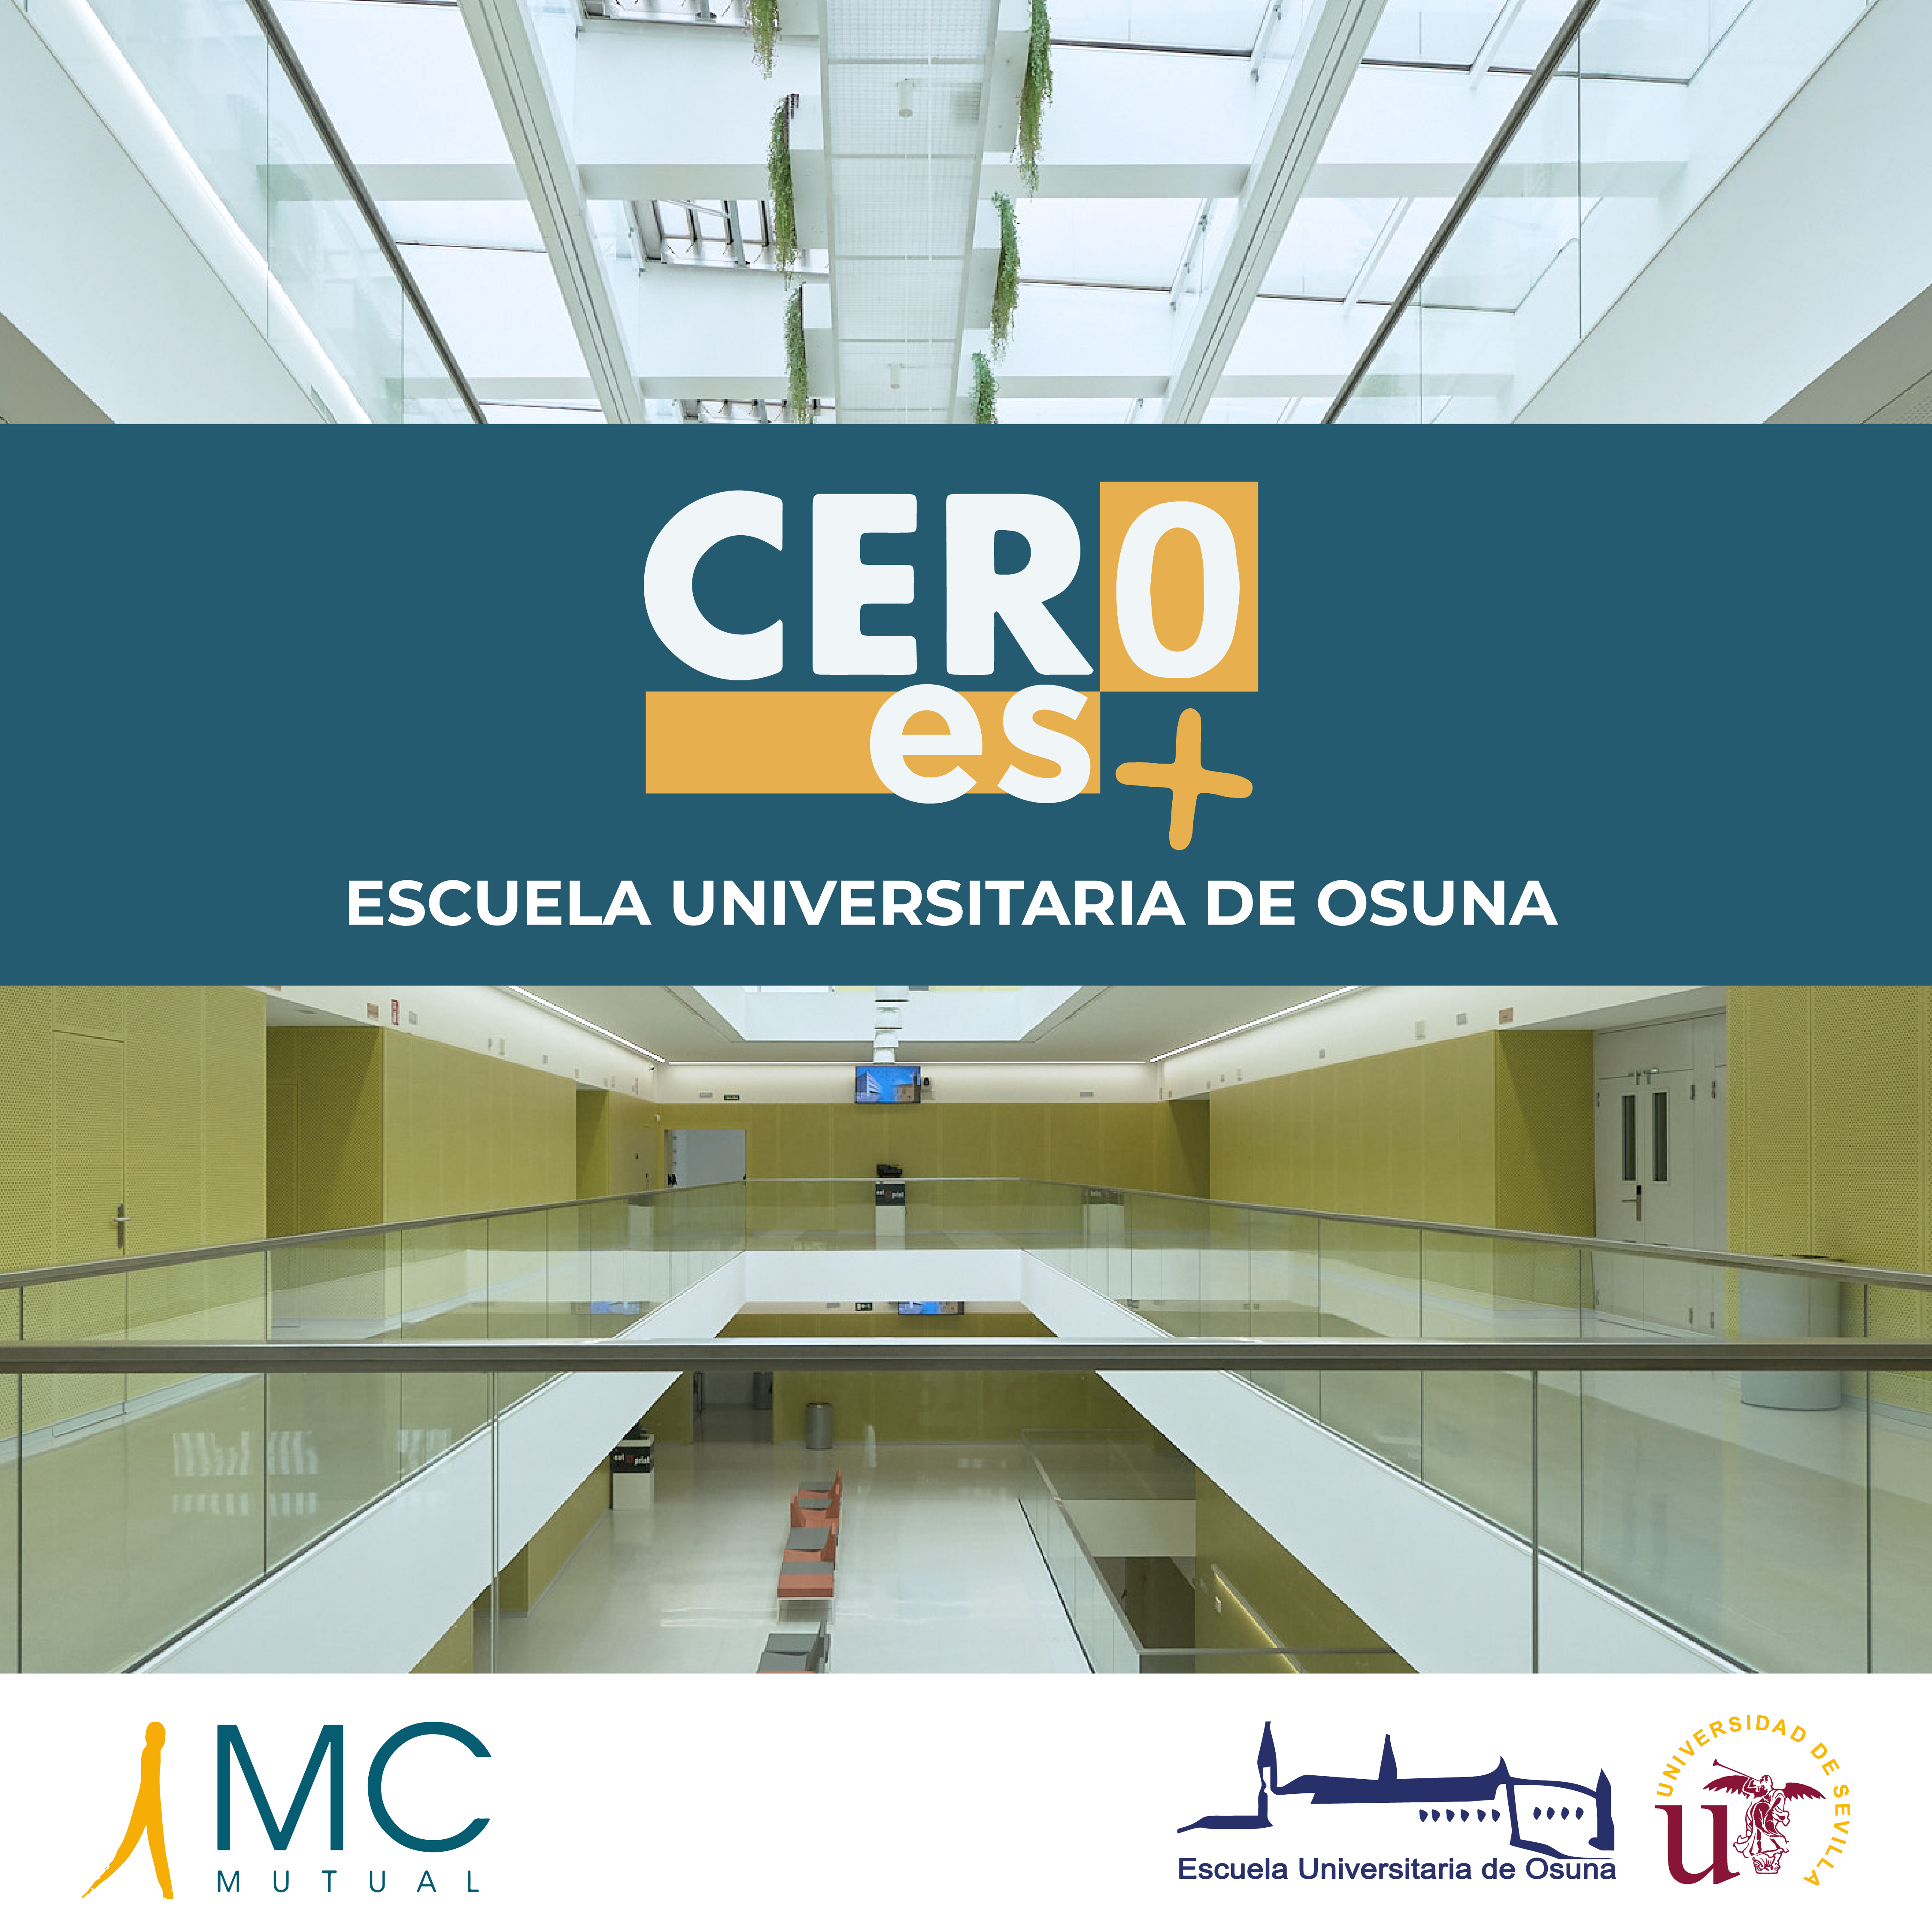 NOTA DE PRENSA | MC Mutual reconoce a la Escuela Universitaria de Osuna con el certificado 'Cero es +'